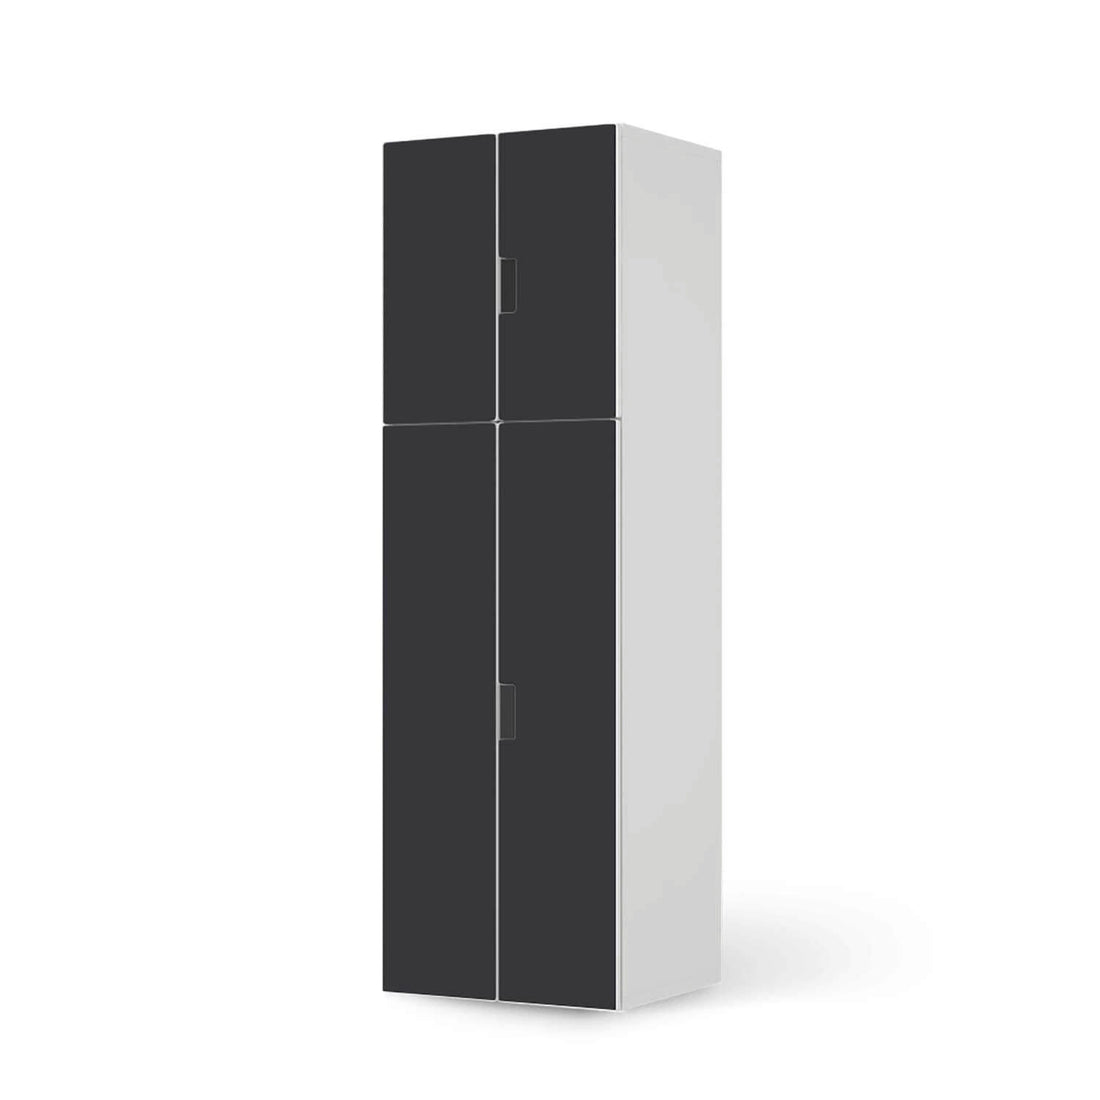 Selbstklebende Folie Grau Dark - IKEA Stuva kombiniert - 2 große Türen und 2 kleine Türen (Kombination 2)  - weiss